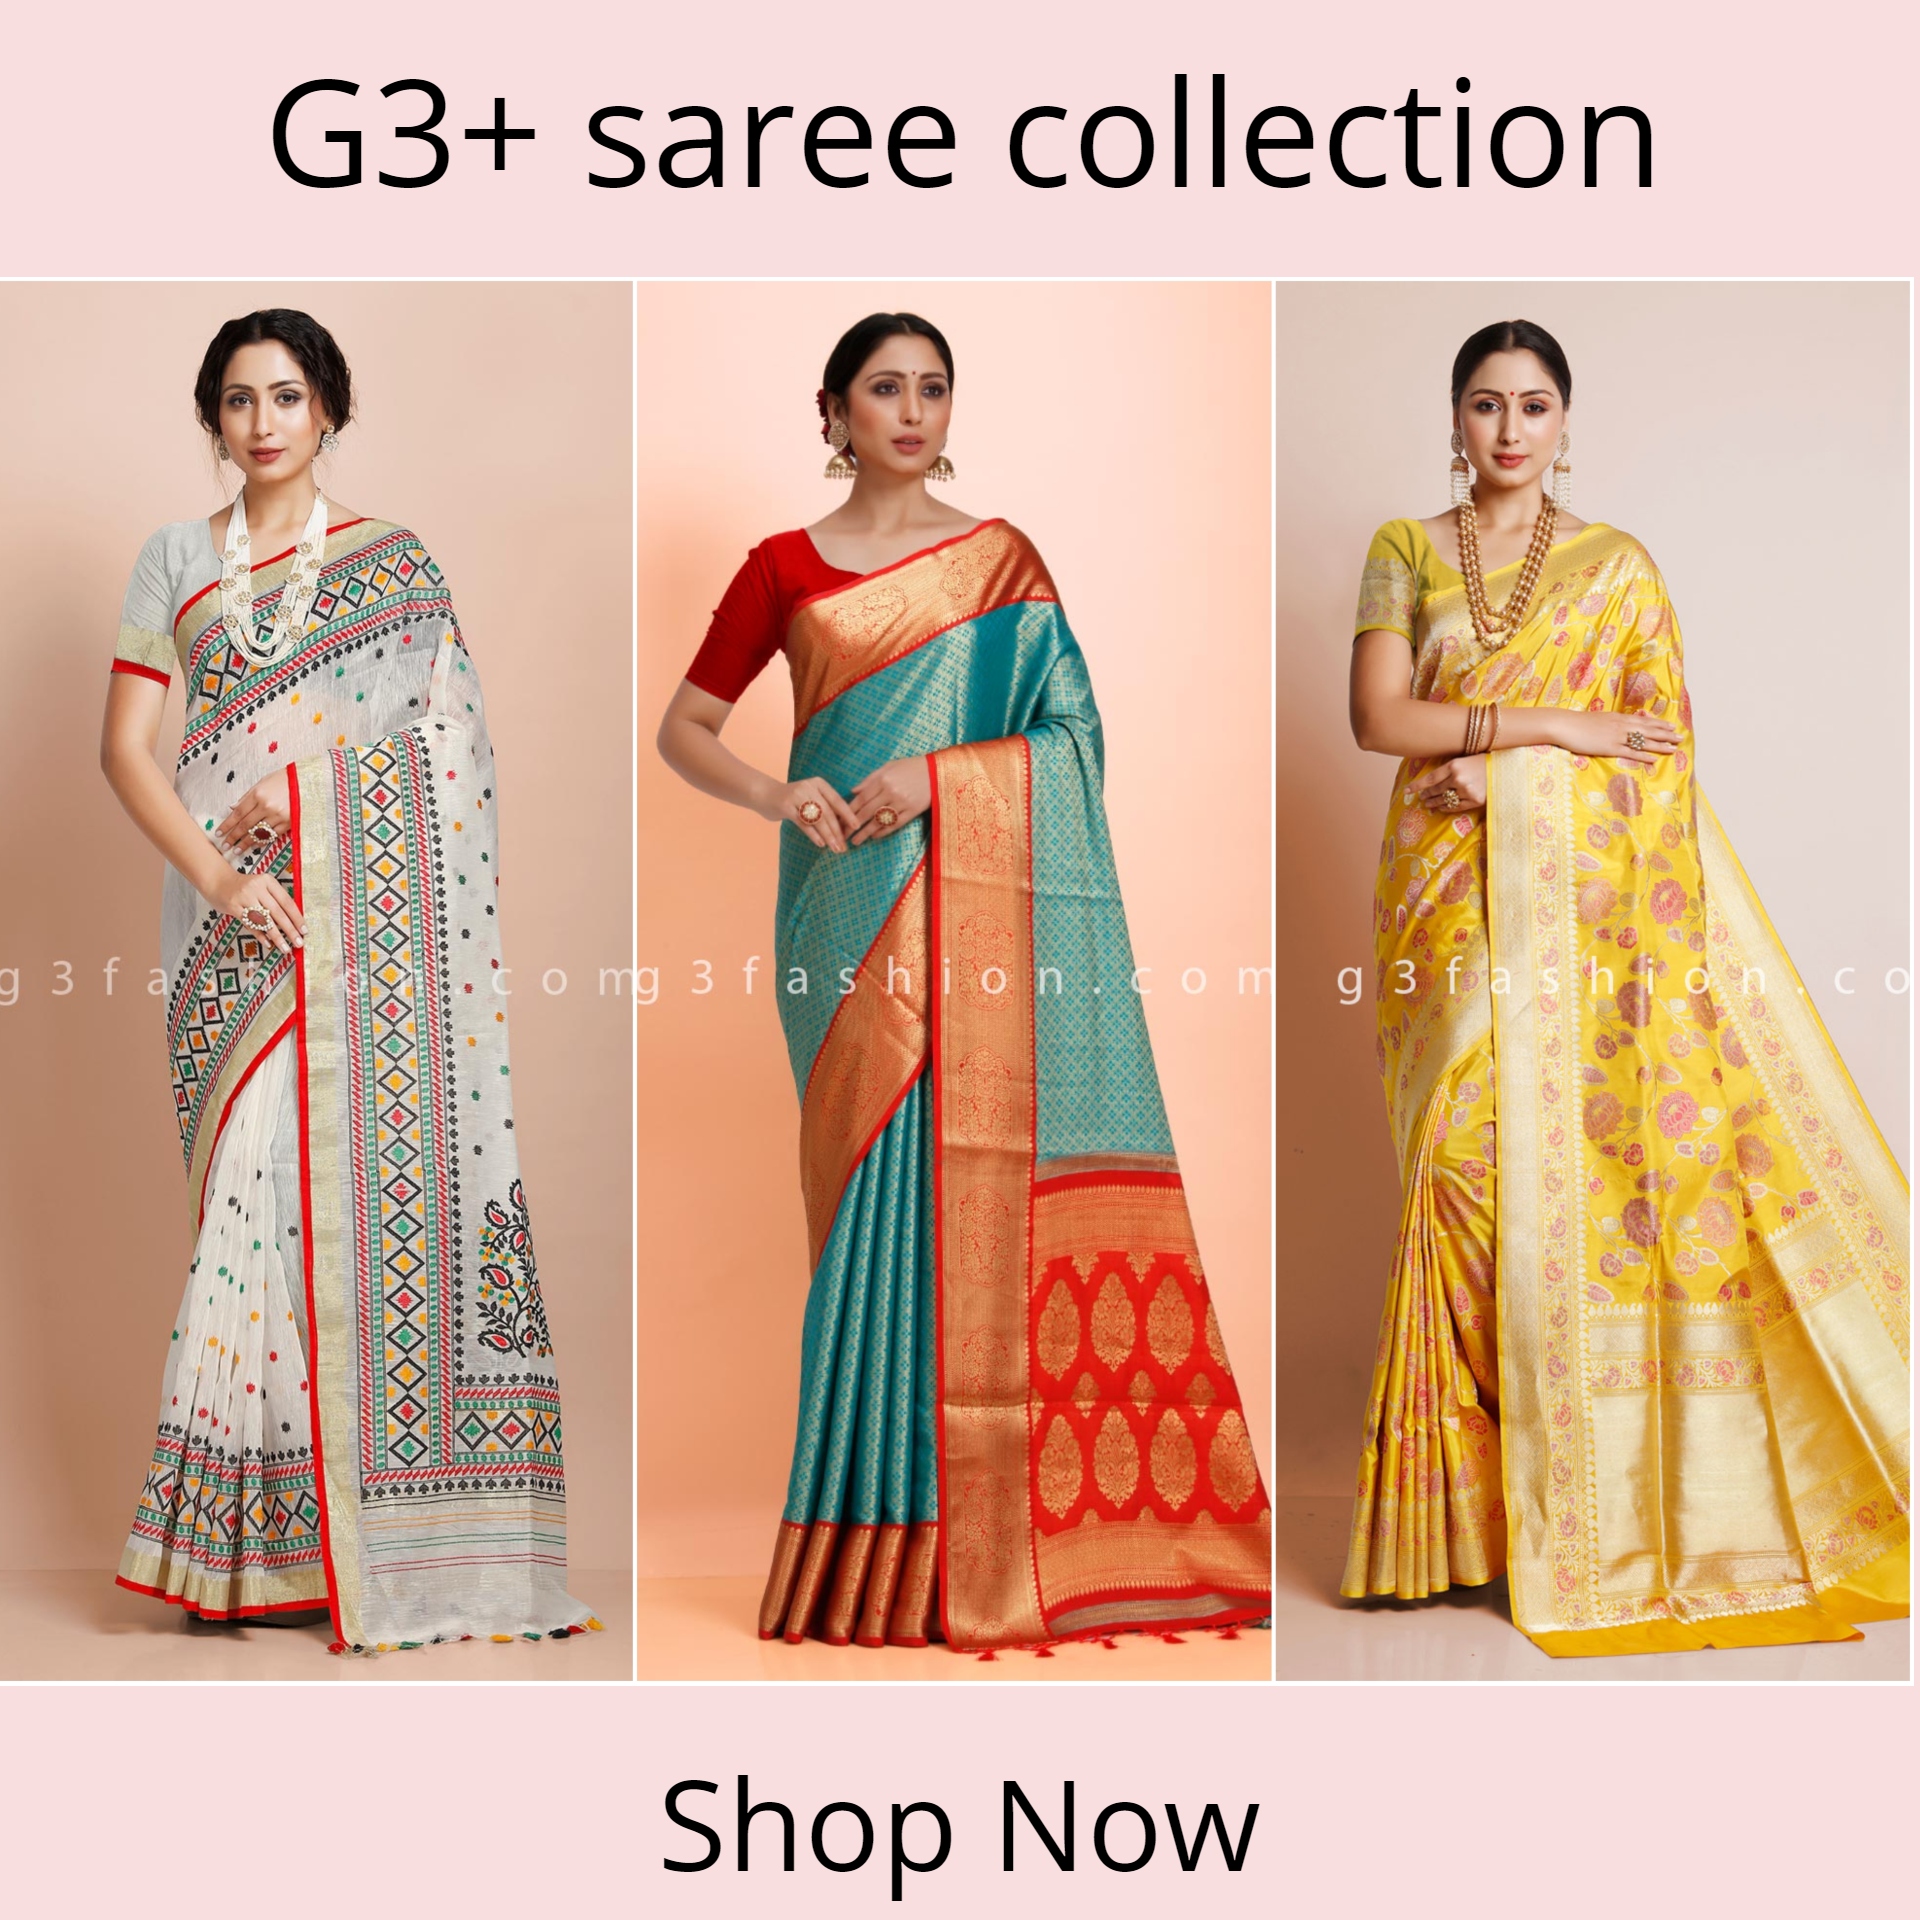 G3+ saree collection